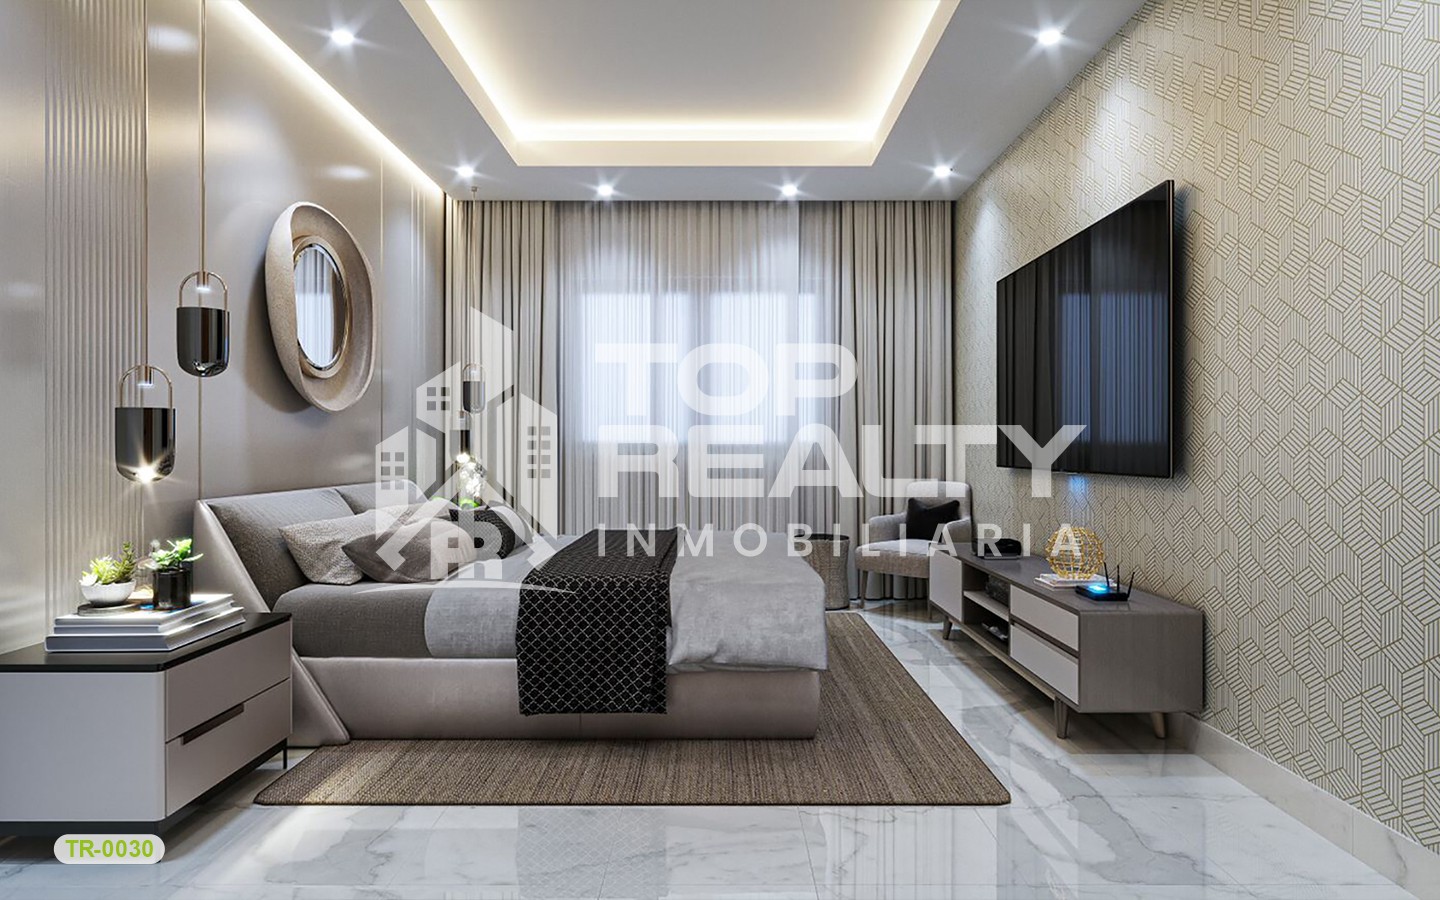 apartamentos - TR-0030A: Propuesta residencial: diseño arquitectónico excepcional. 1